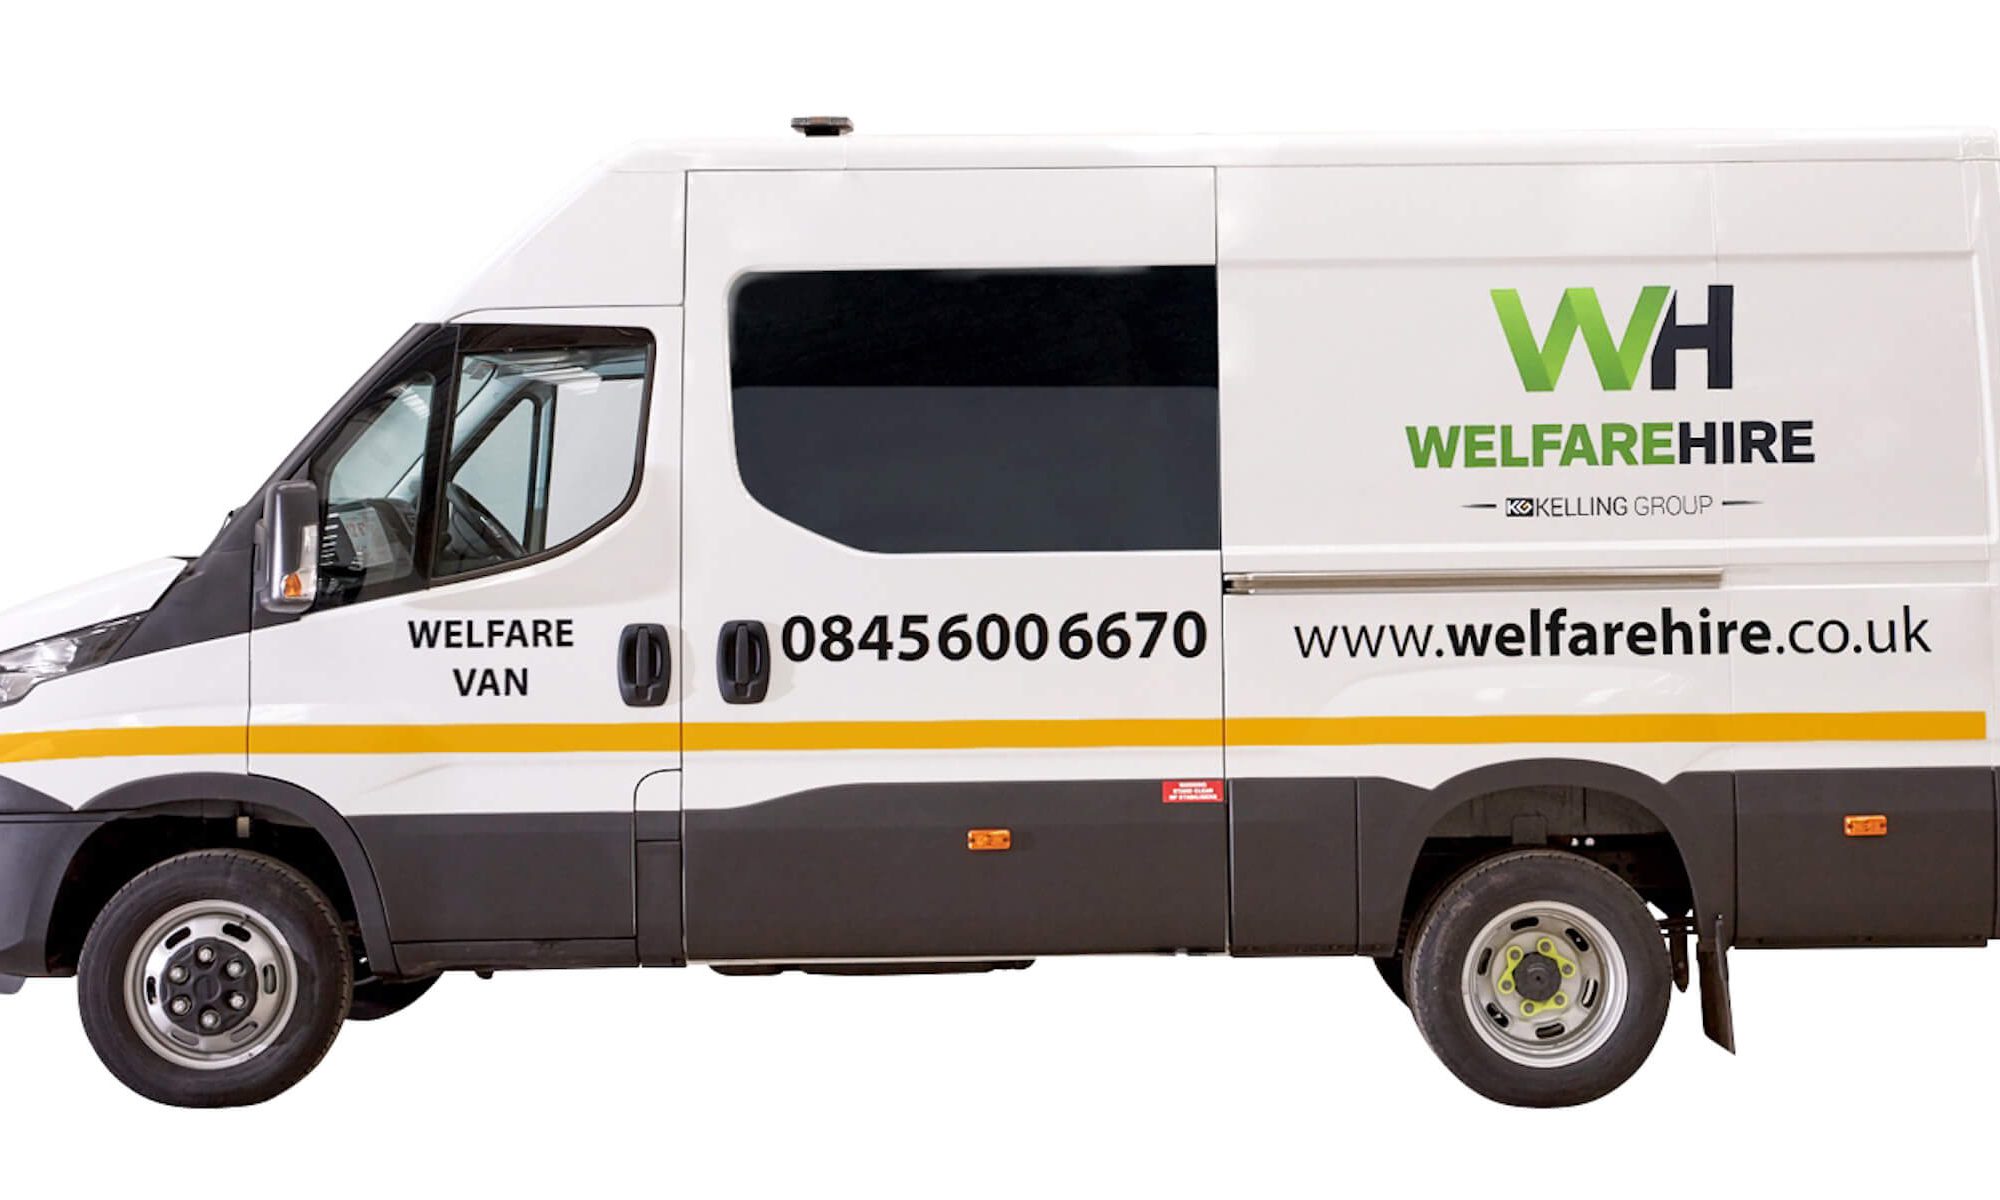 Welfare Van for hire across the UK